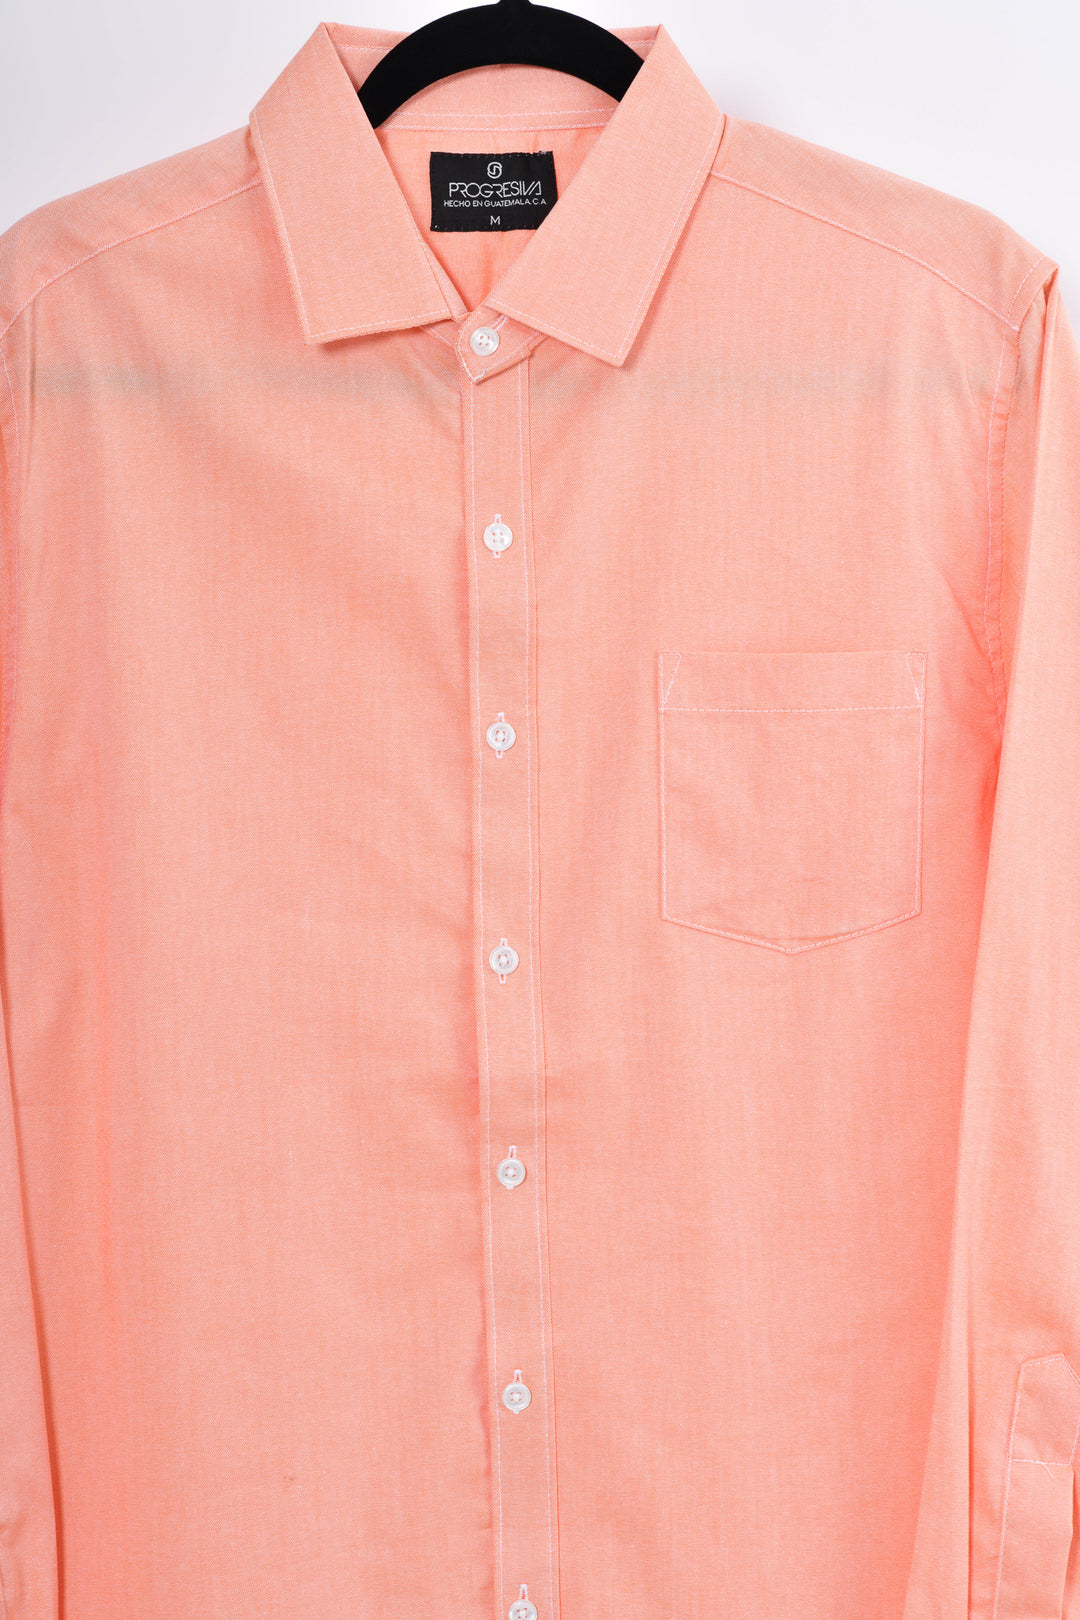 Camisa oxford manga larga cuello normal - naranja